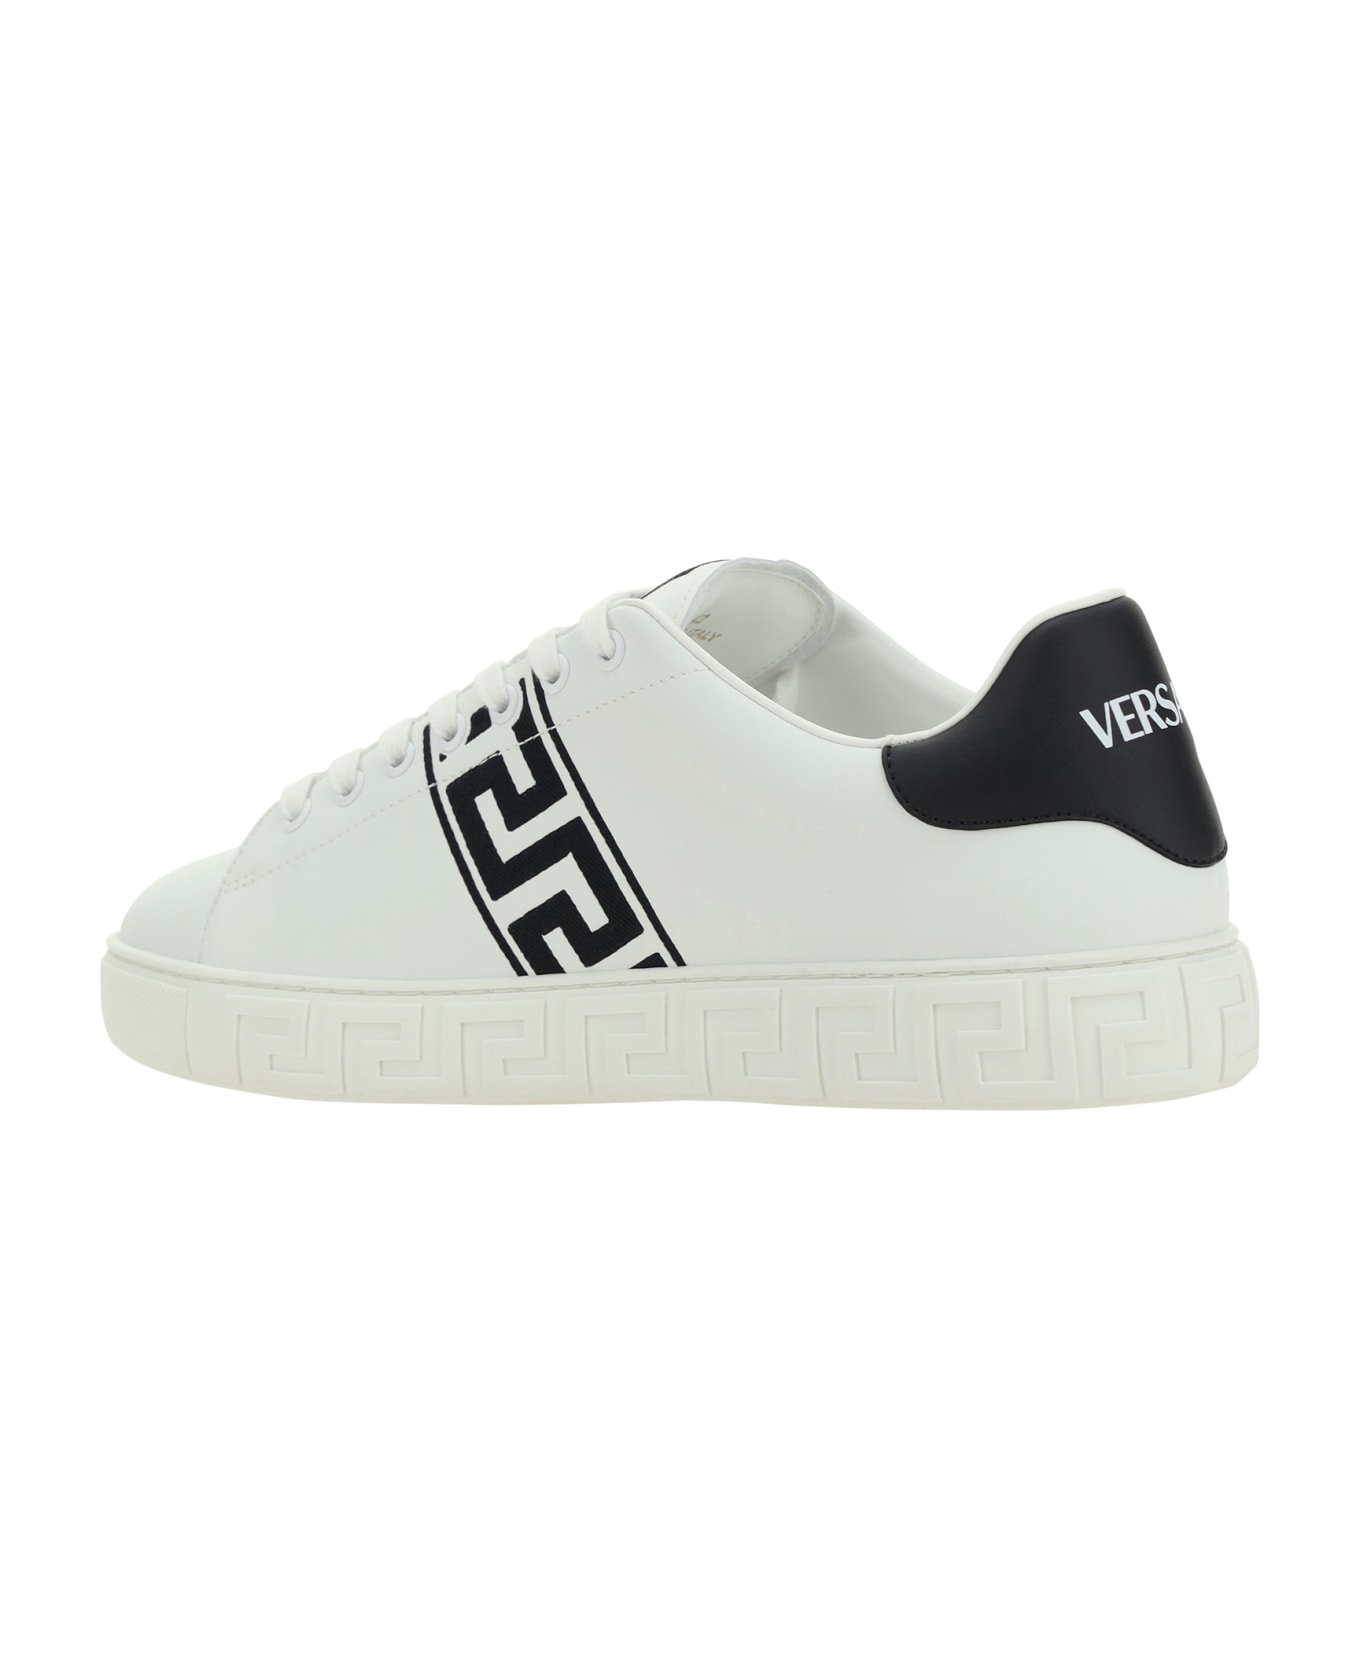 Versace Low Top Sneakers - WHITE/BLACK